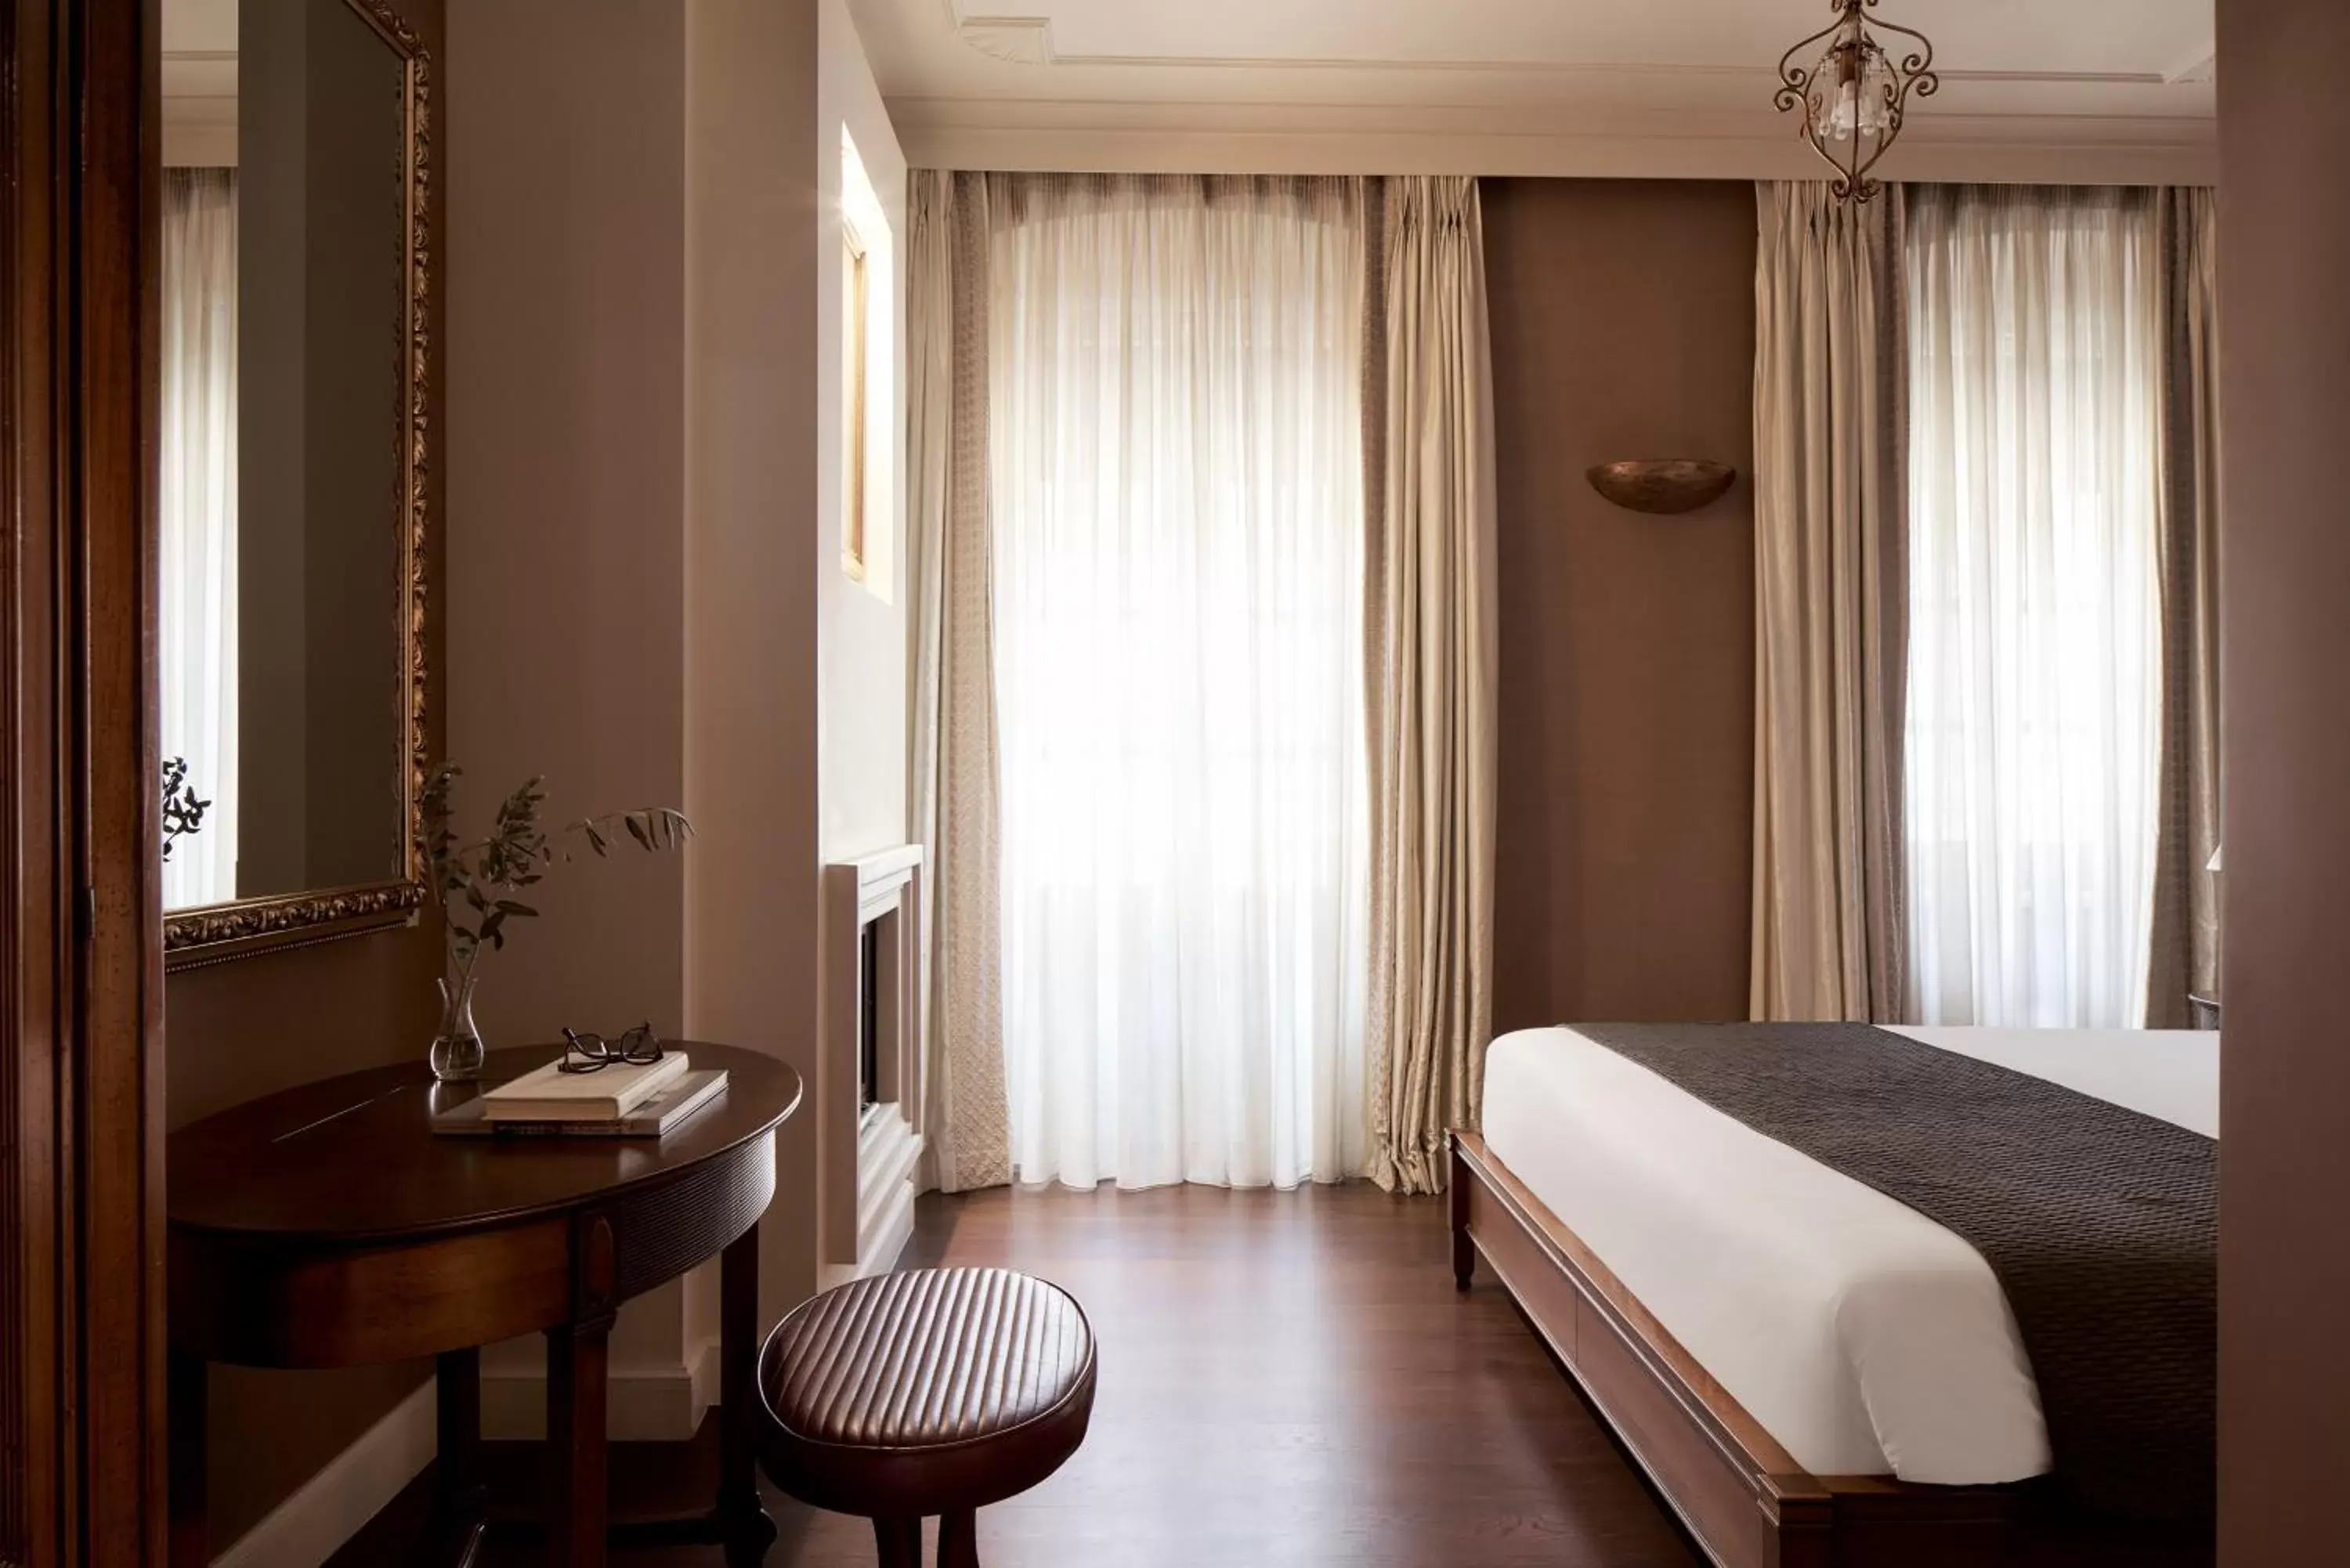 Bedroom in Hotel Ippoliti